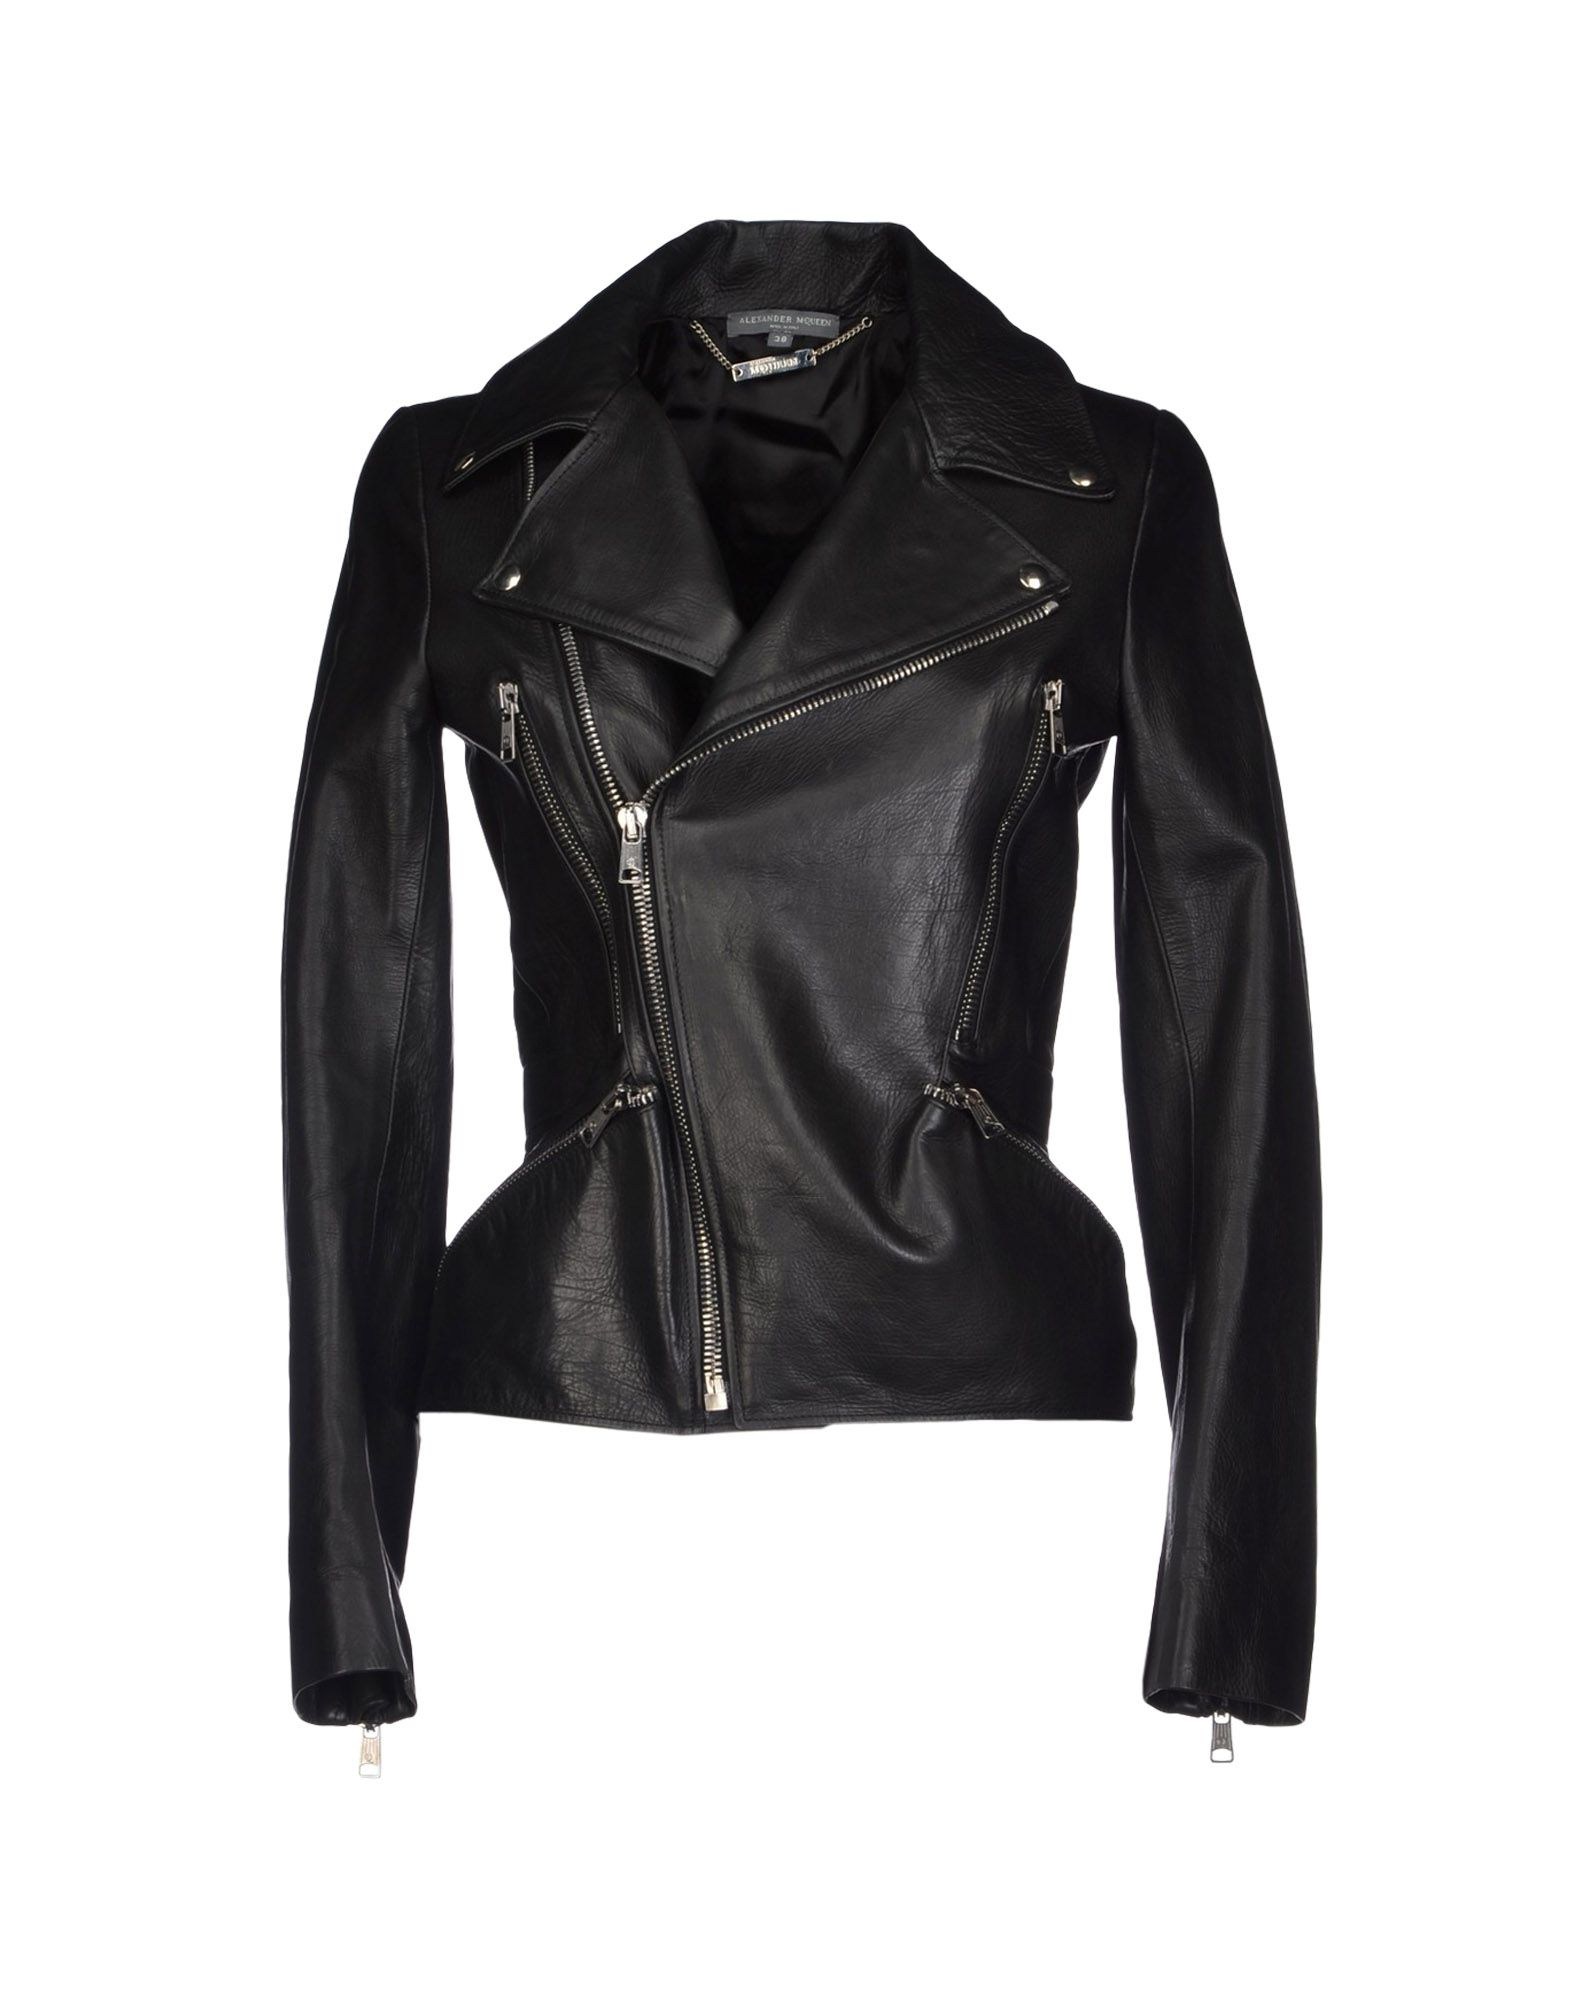 Lyst - Alexander mcqueen Stud Grainy Leather Biker Jacket in Black